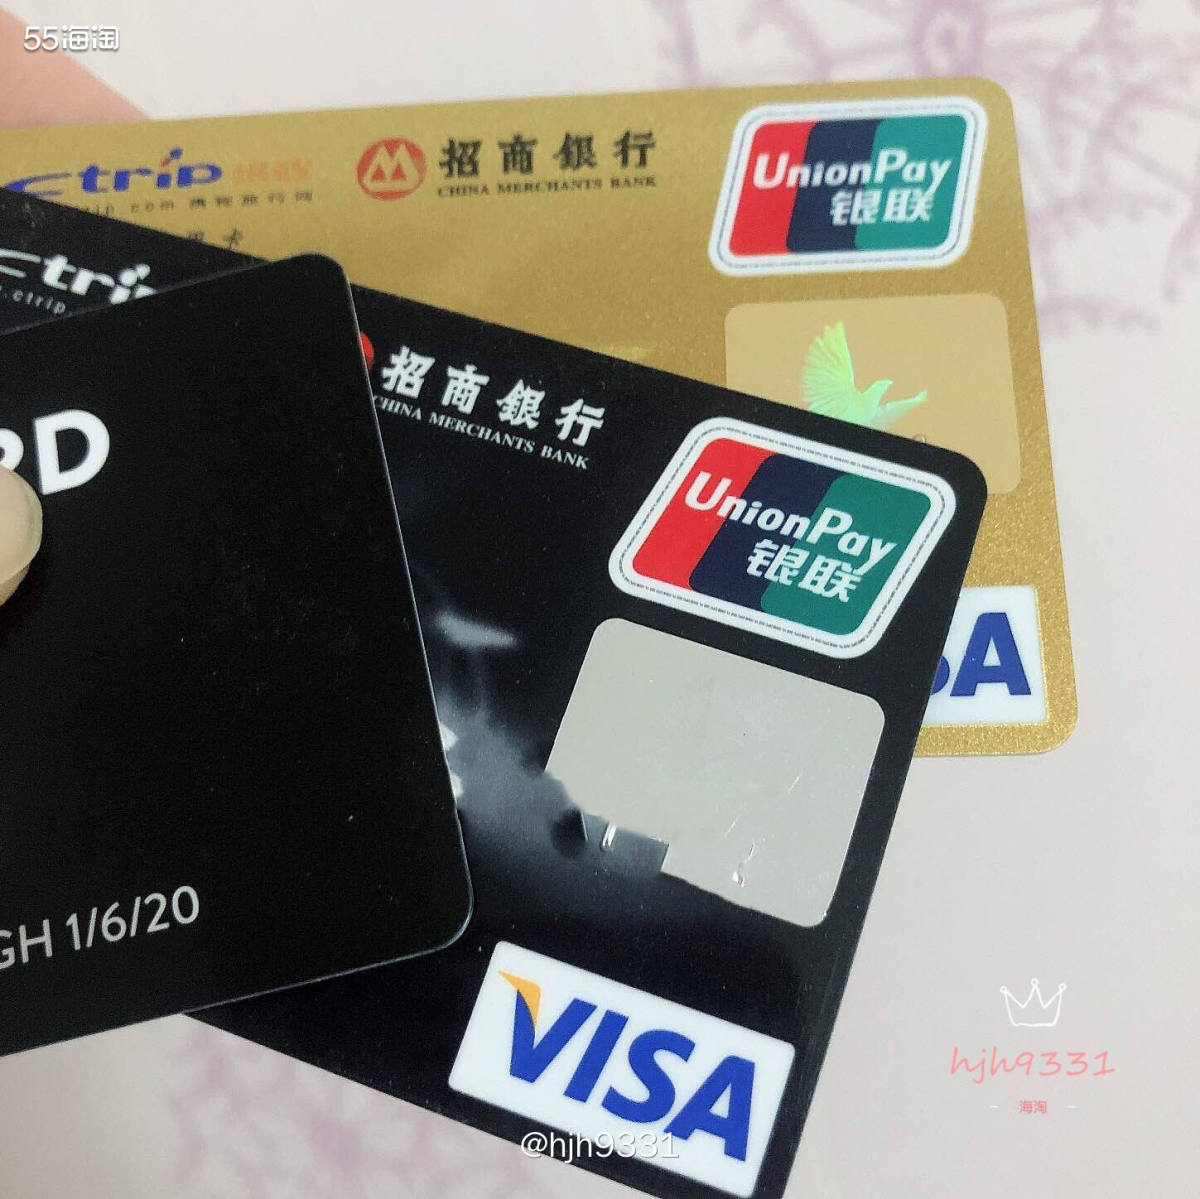 ✨招商银行VISA信用卡✨ 💯💯💯 这张招行visa信